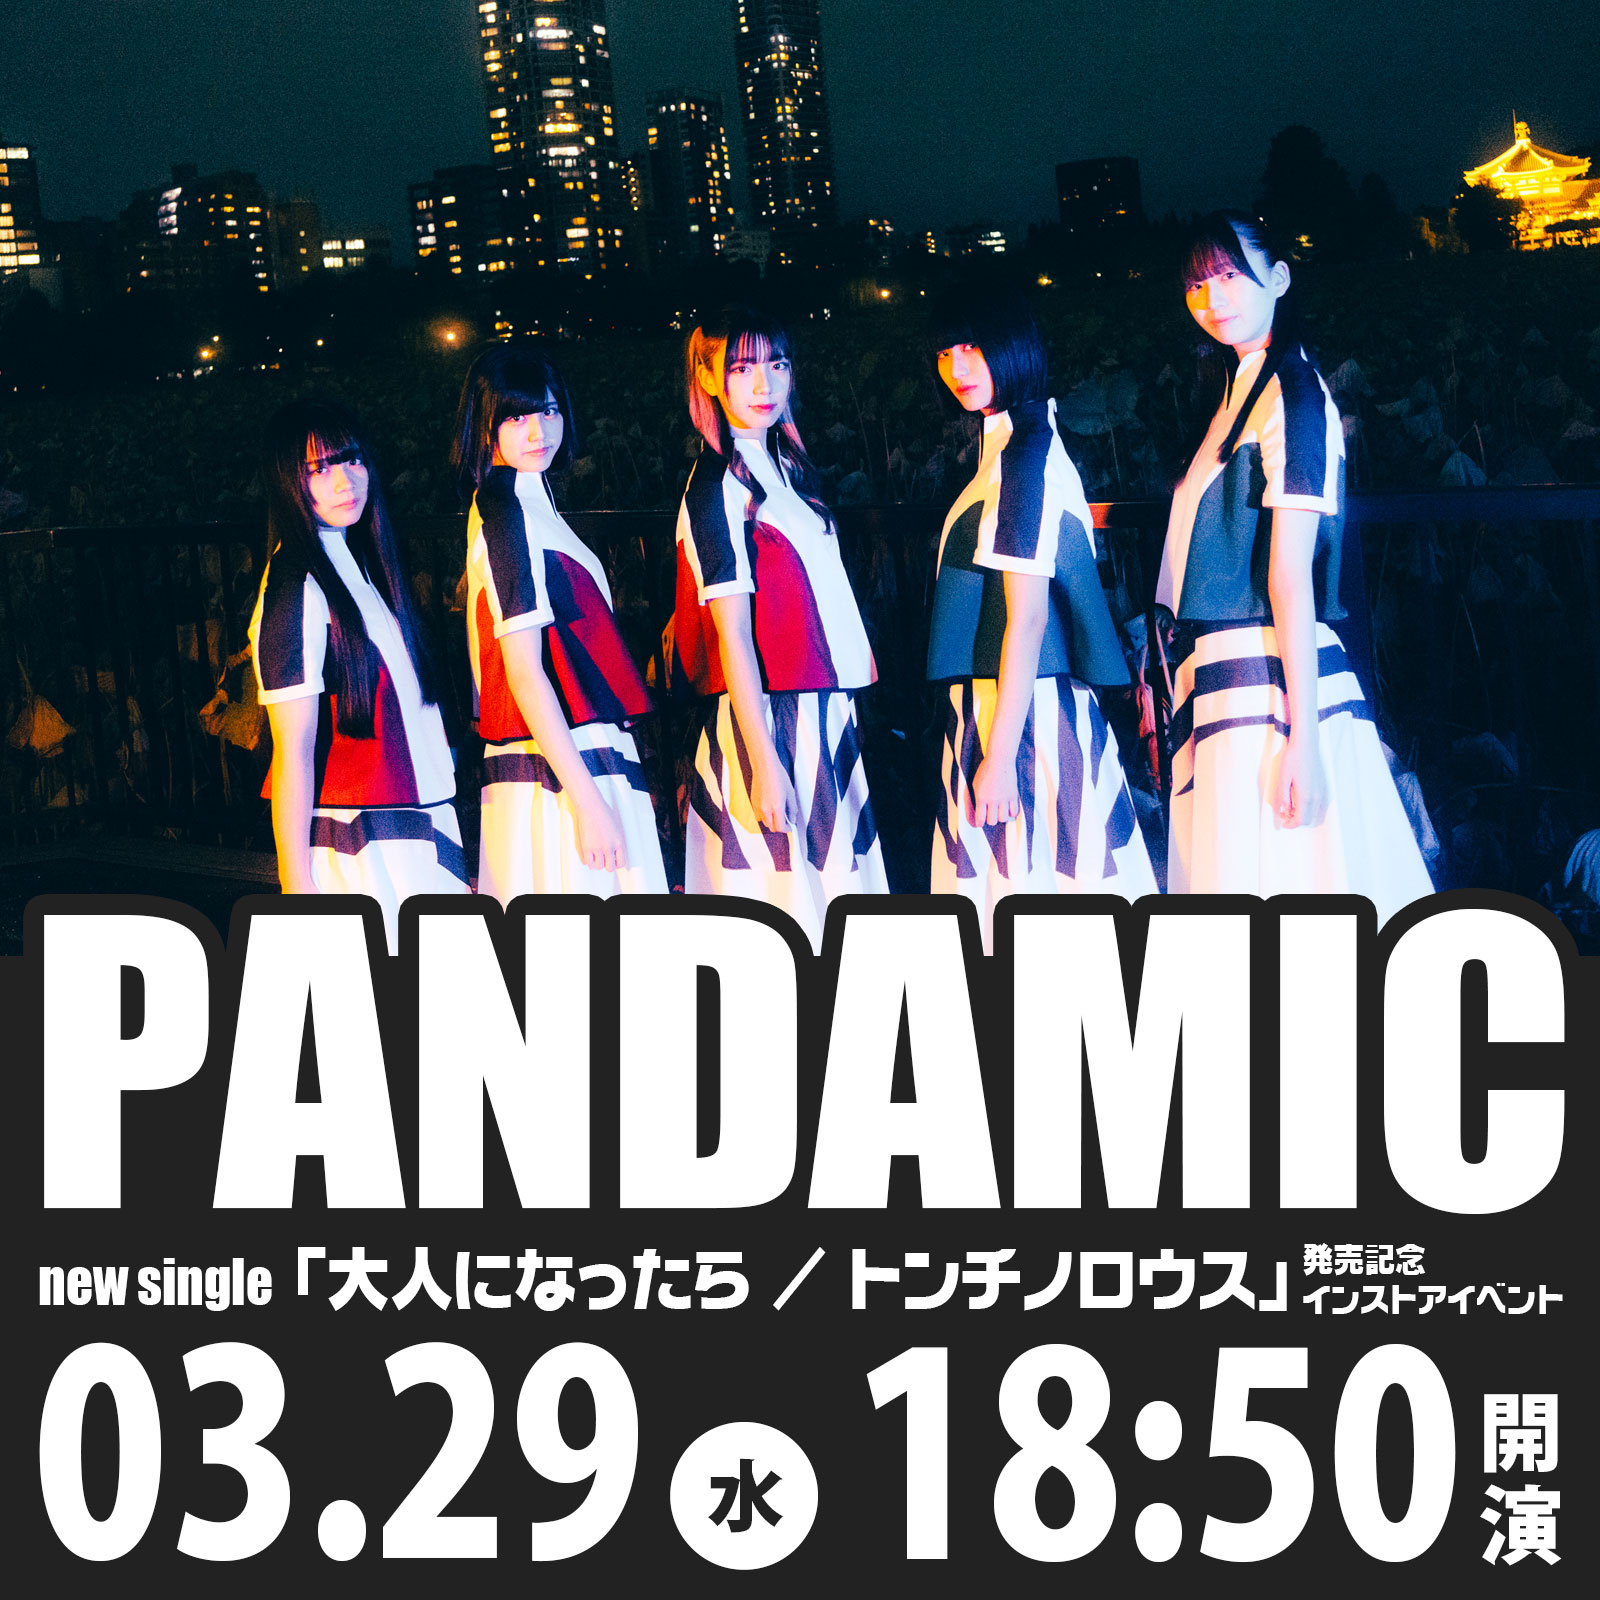 3/29（水）PANDAMIC new single「大人になったら / トンチノロウス」発売記念インストアイベント